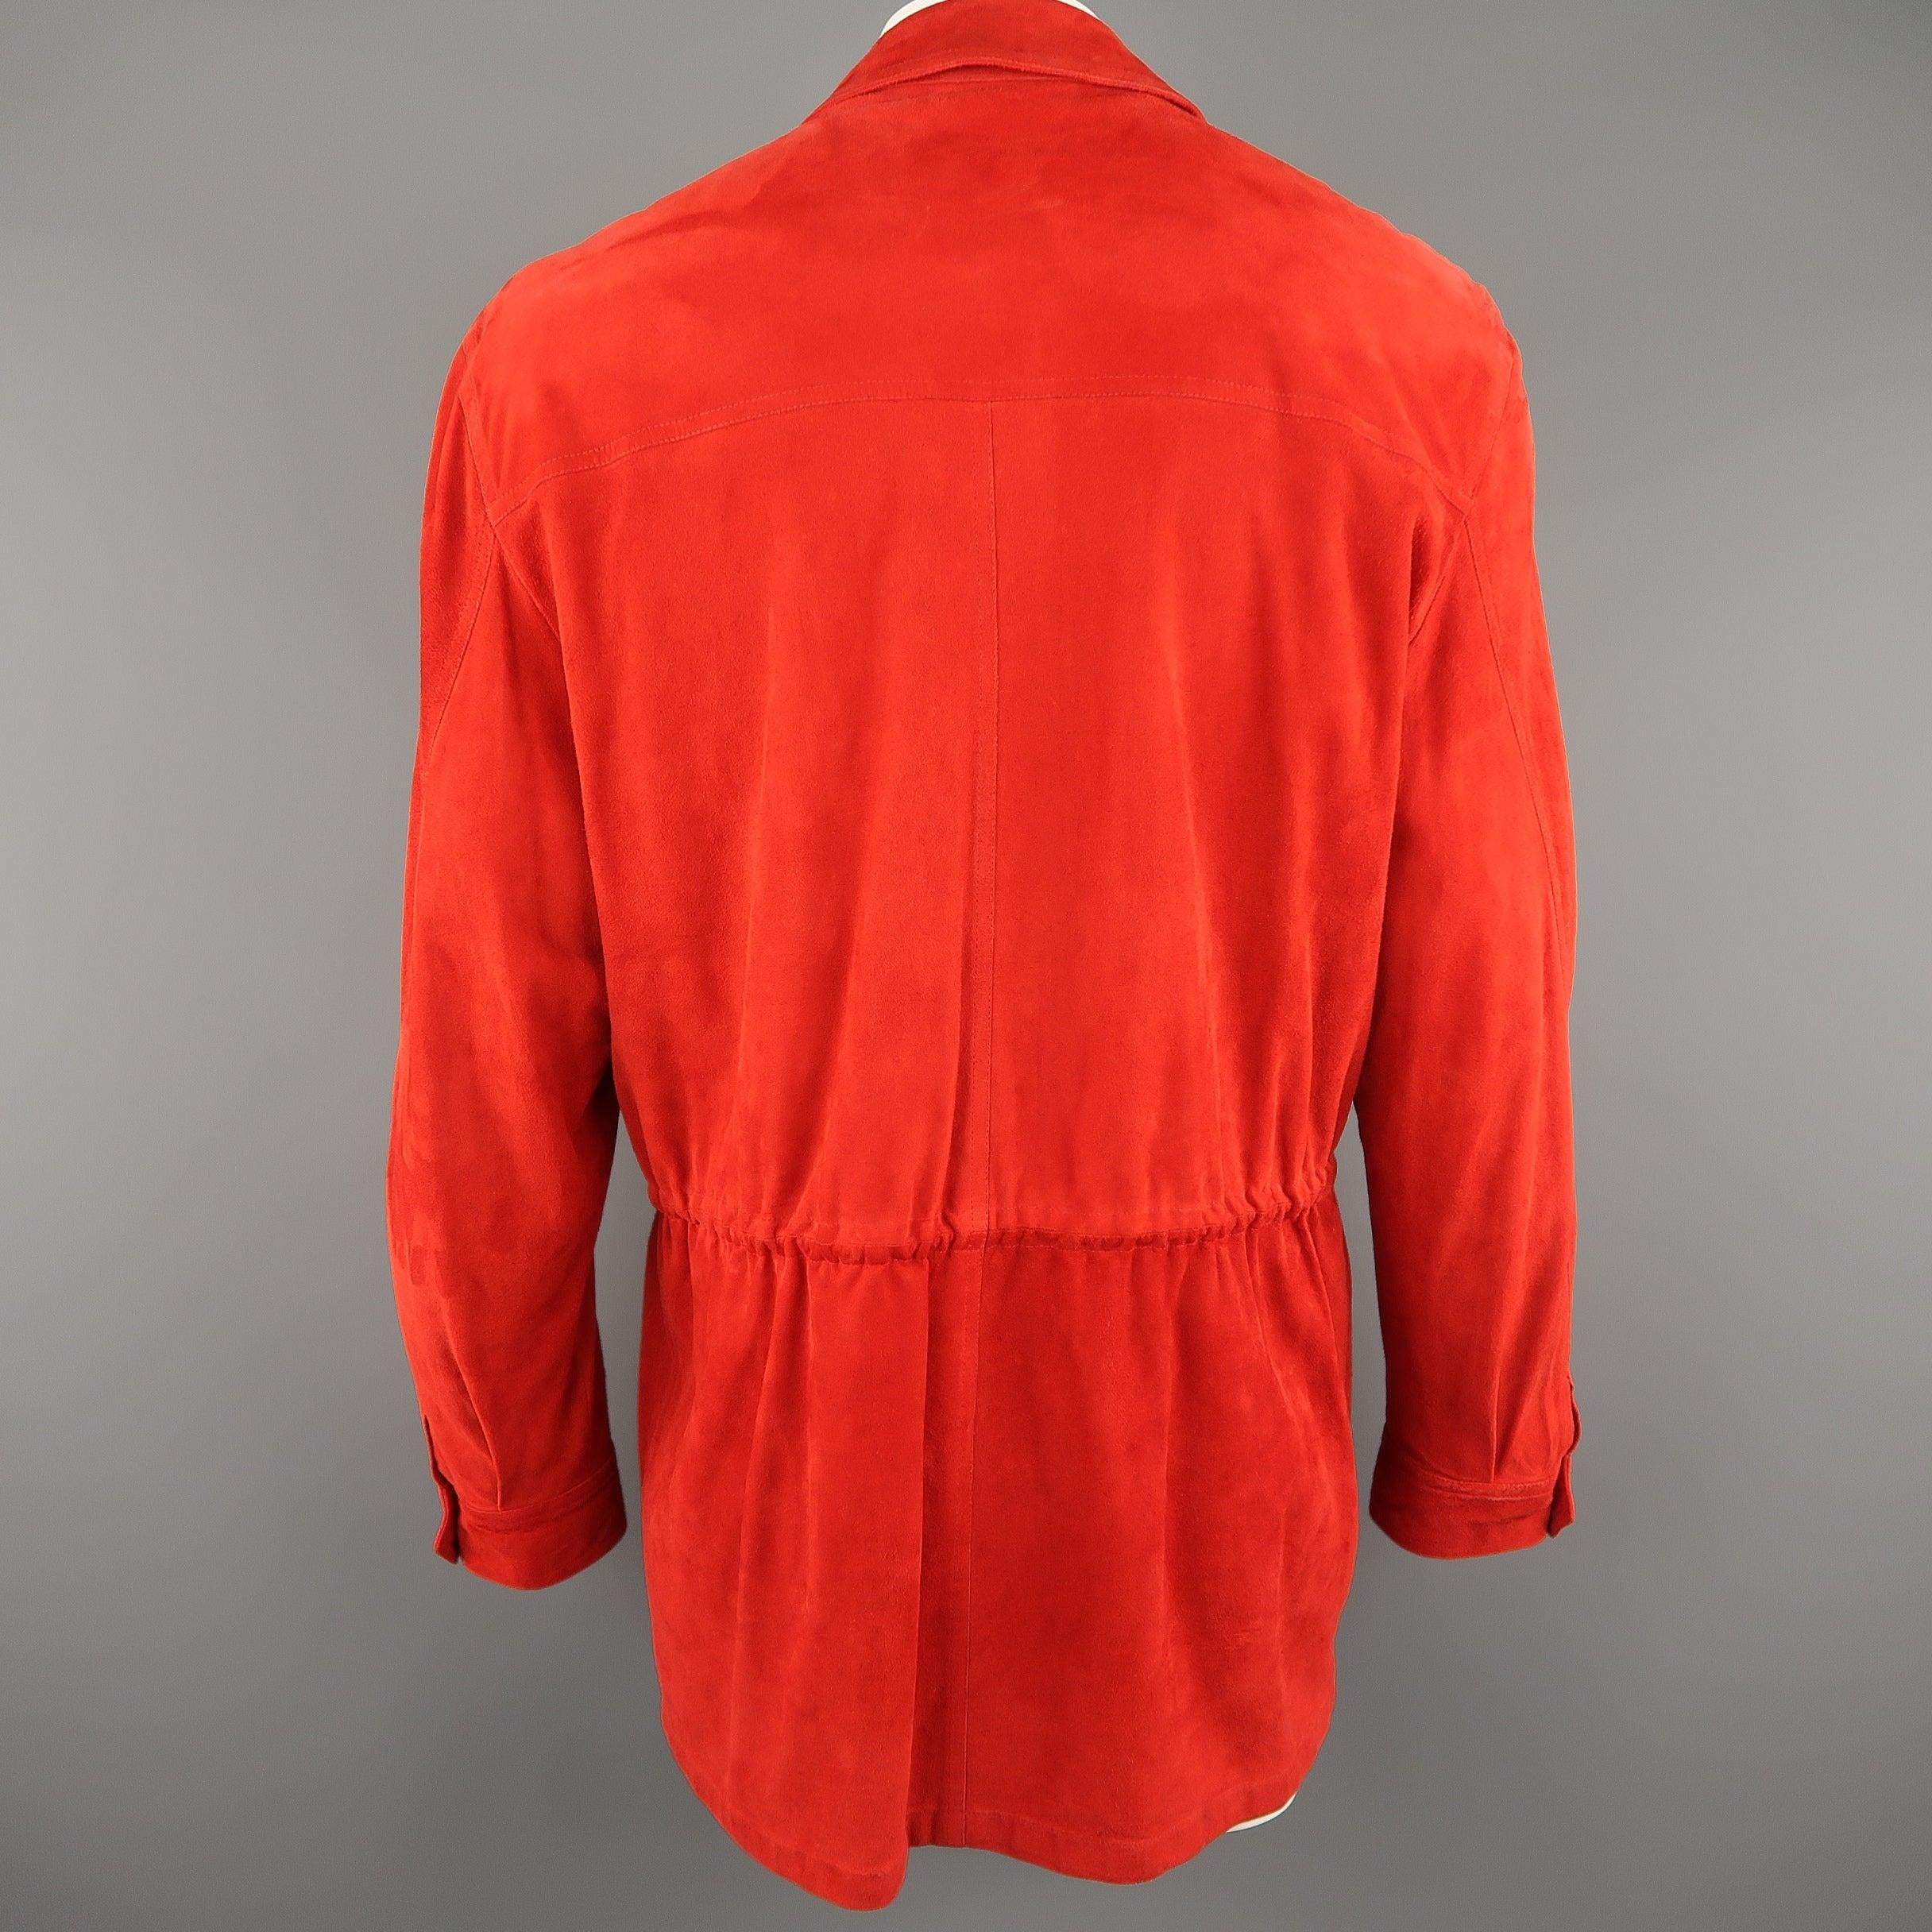 VALSTAR 42 Red Suede Four Pocket Drawstring Waist Coat For Sale 3